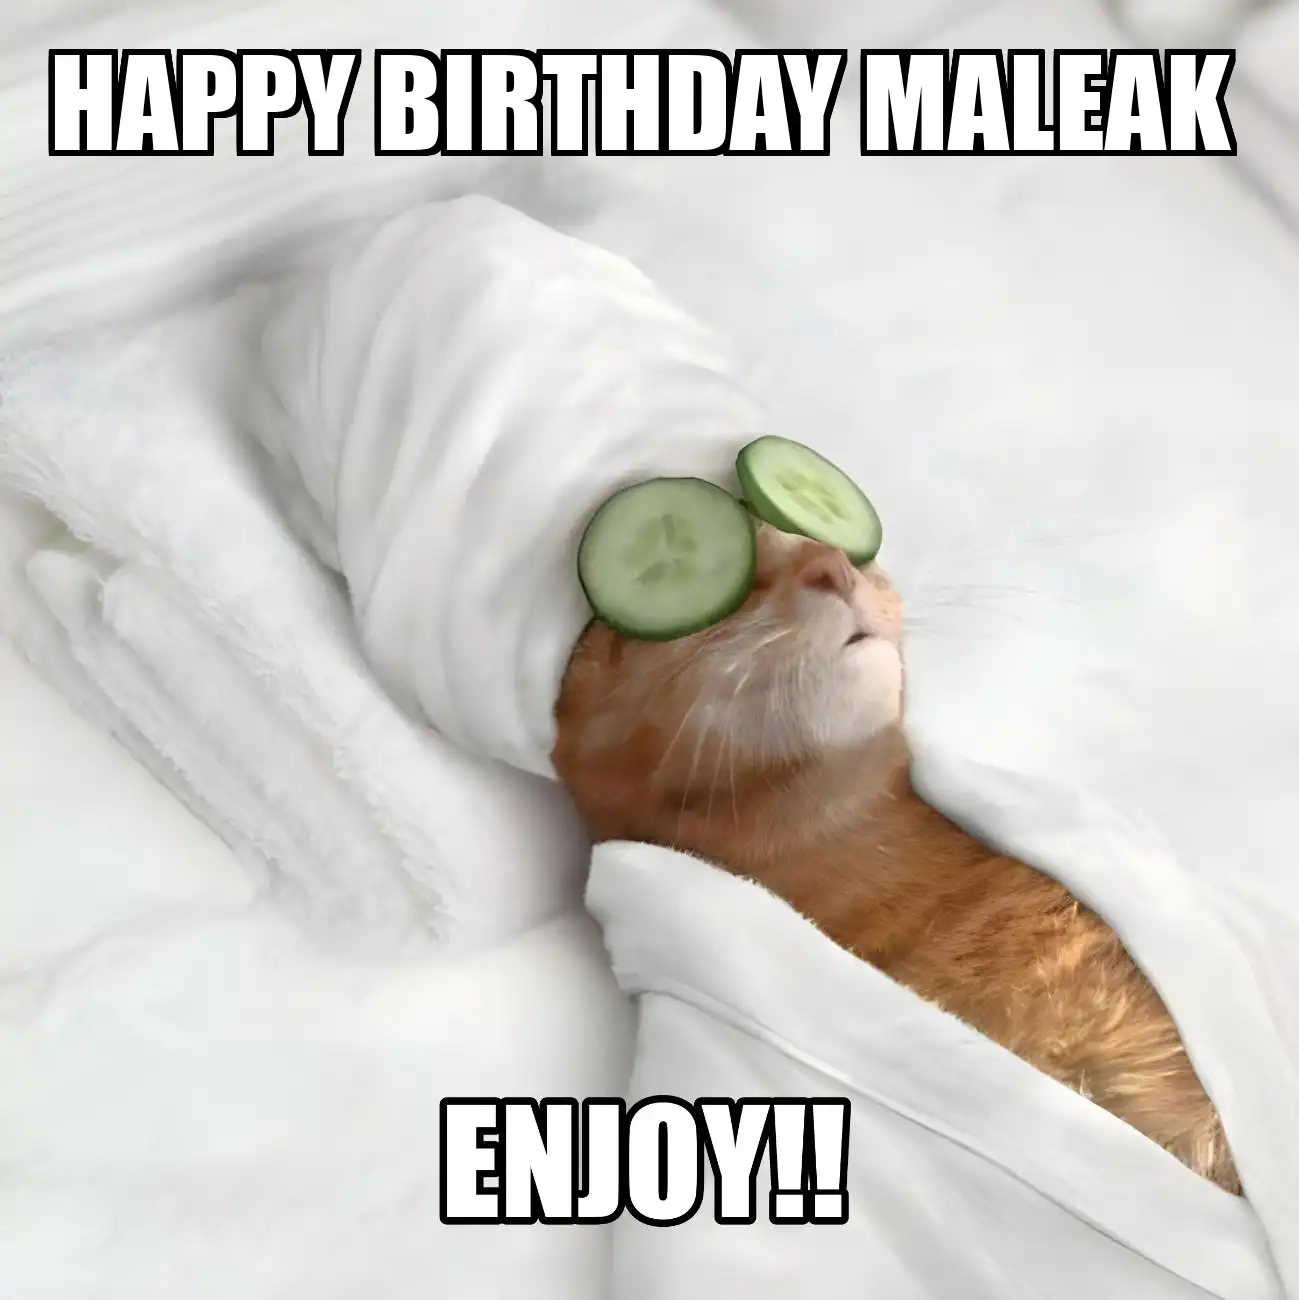 Happy Birthday Maleak Enjoy Cat Meme